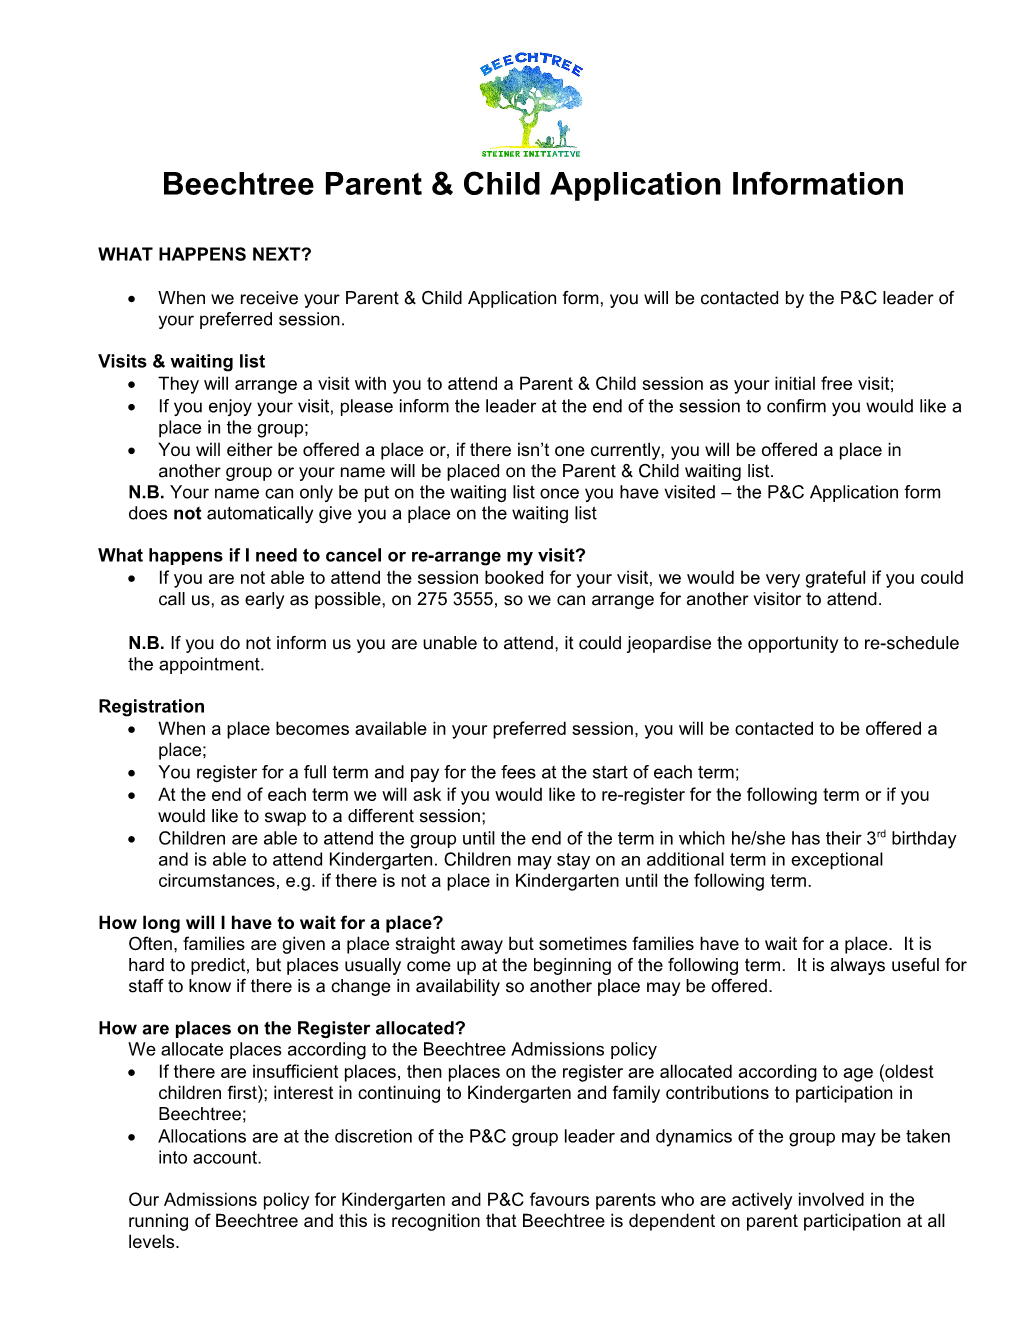 Beechtree Kindergarten Application Form